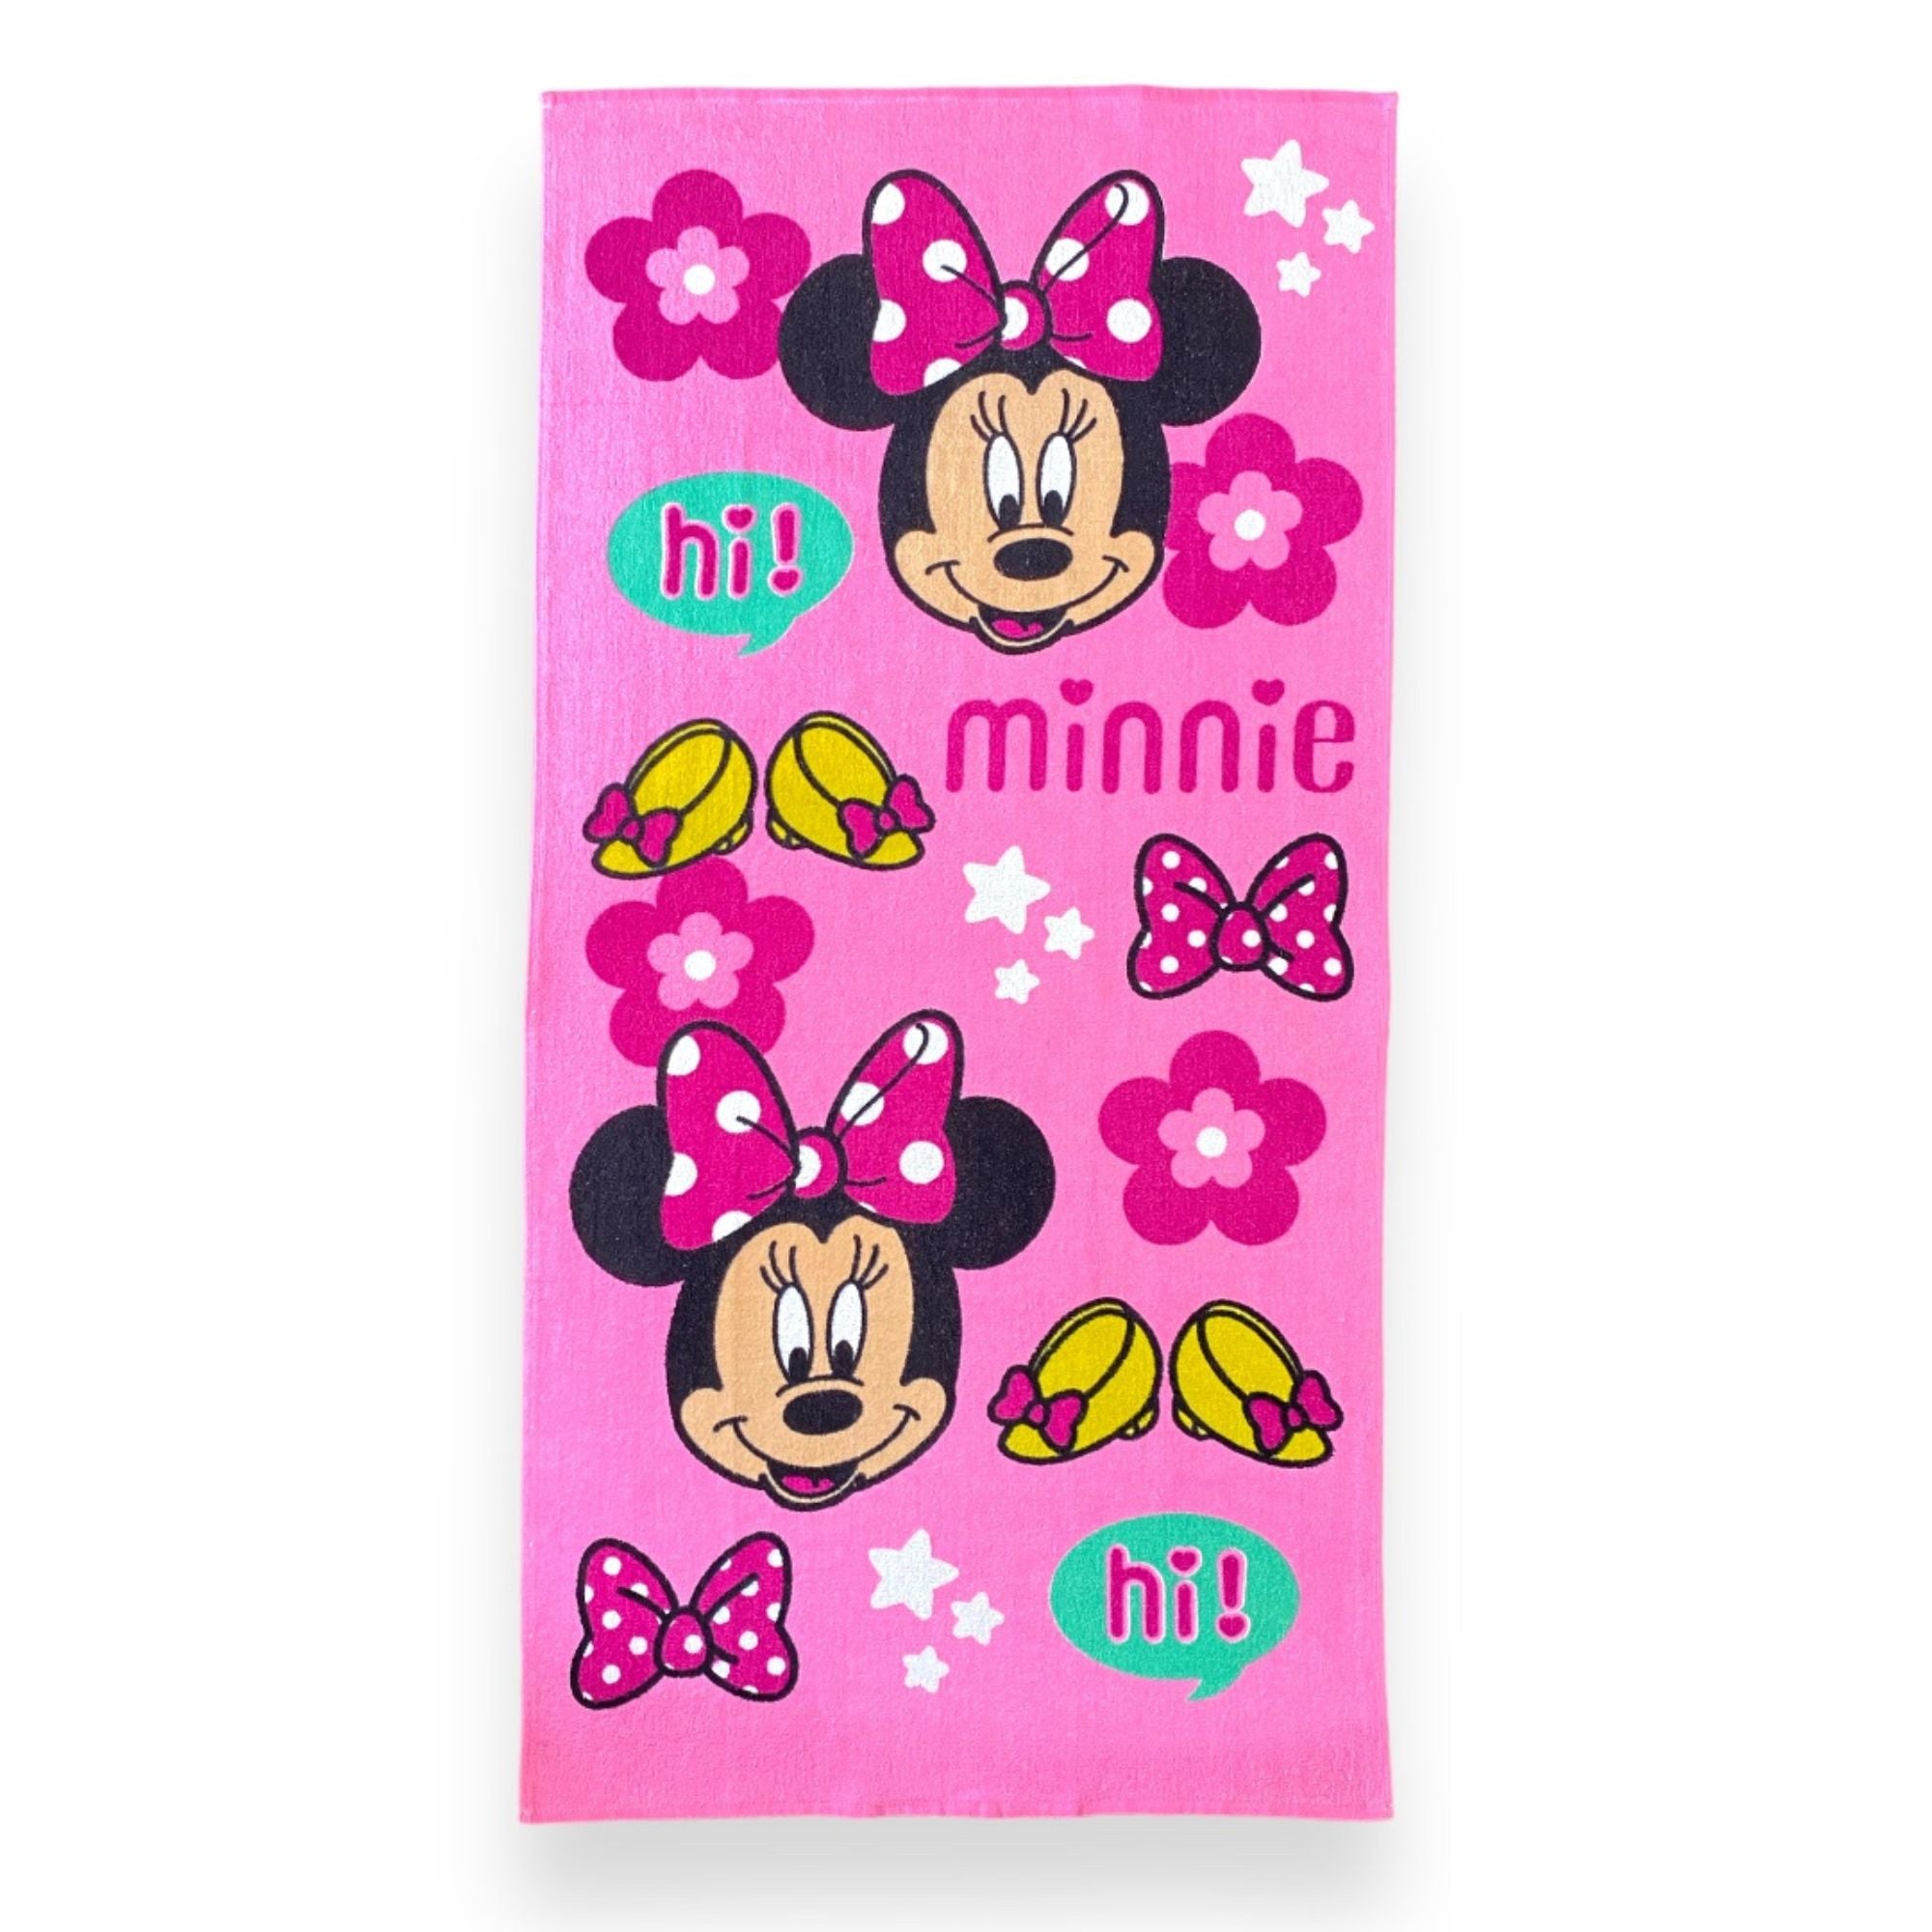 Toalla oficial de Minnie Mouse de 60 x 120 Cms.